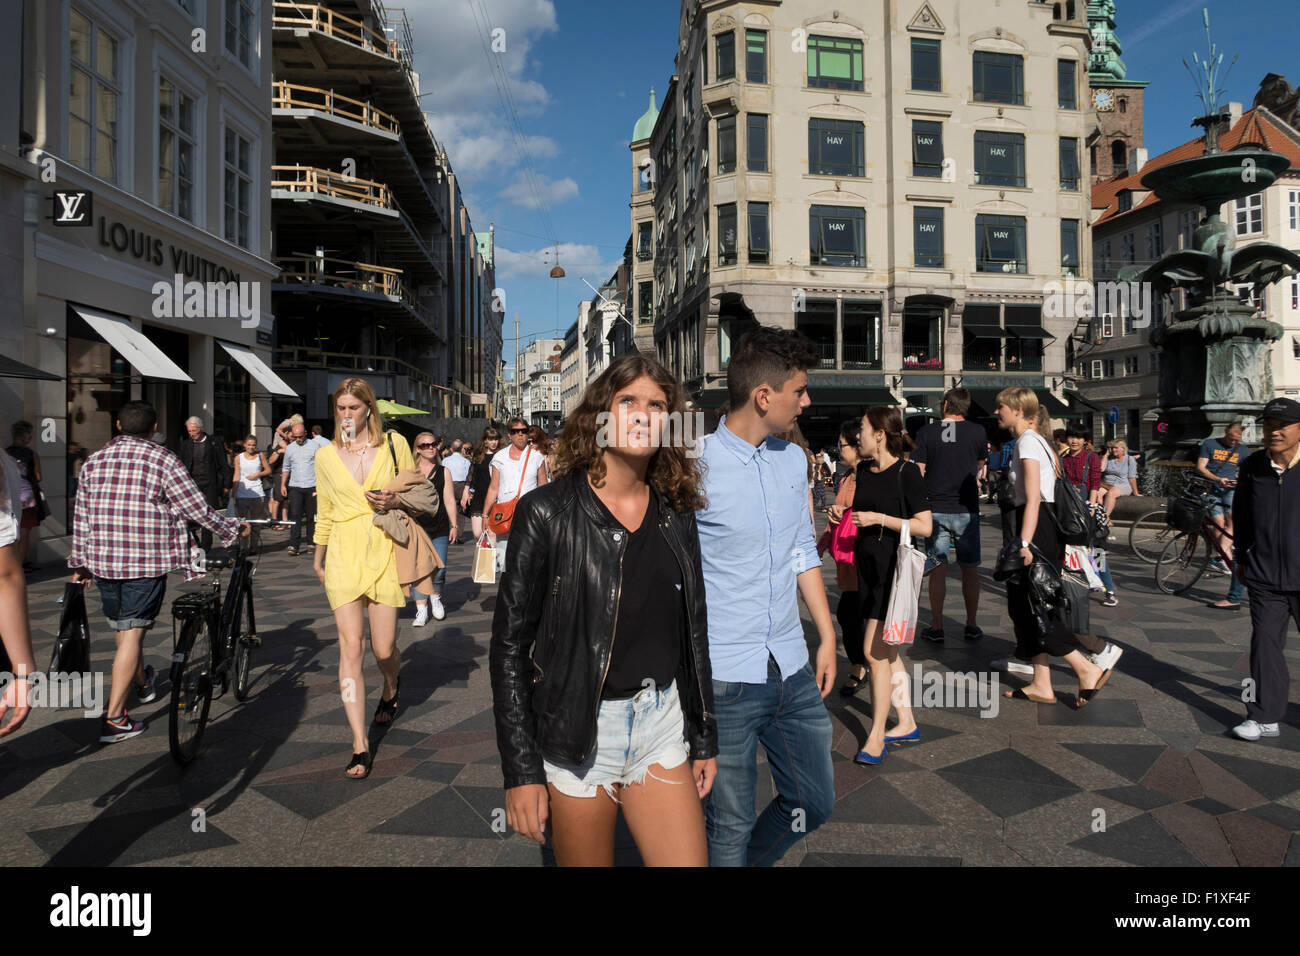 People walking on a busy street in Copenhagen, Denmark Stock Photo